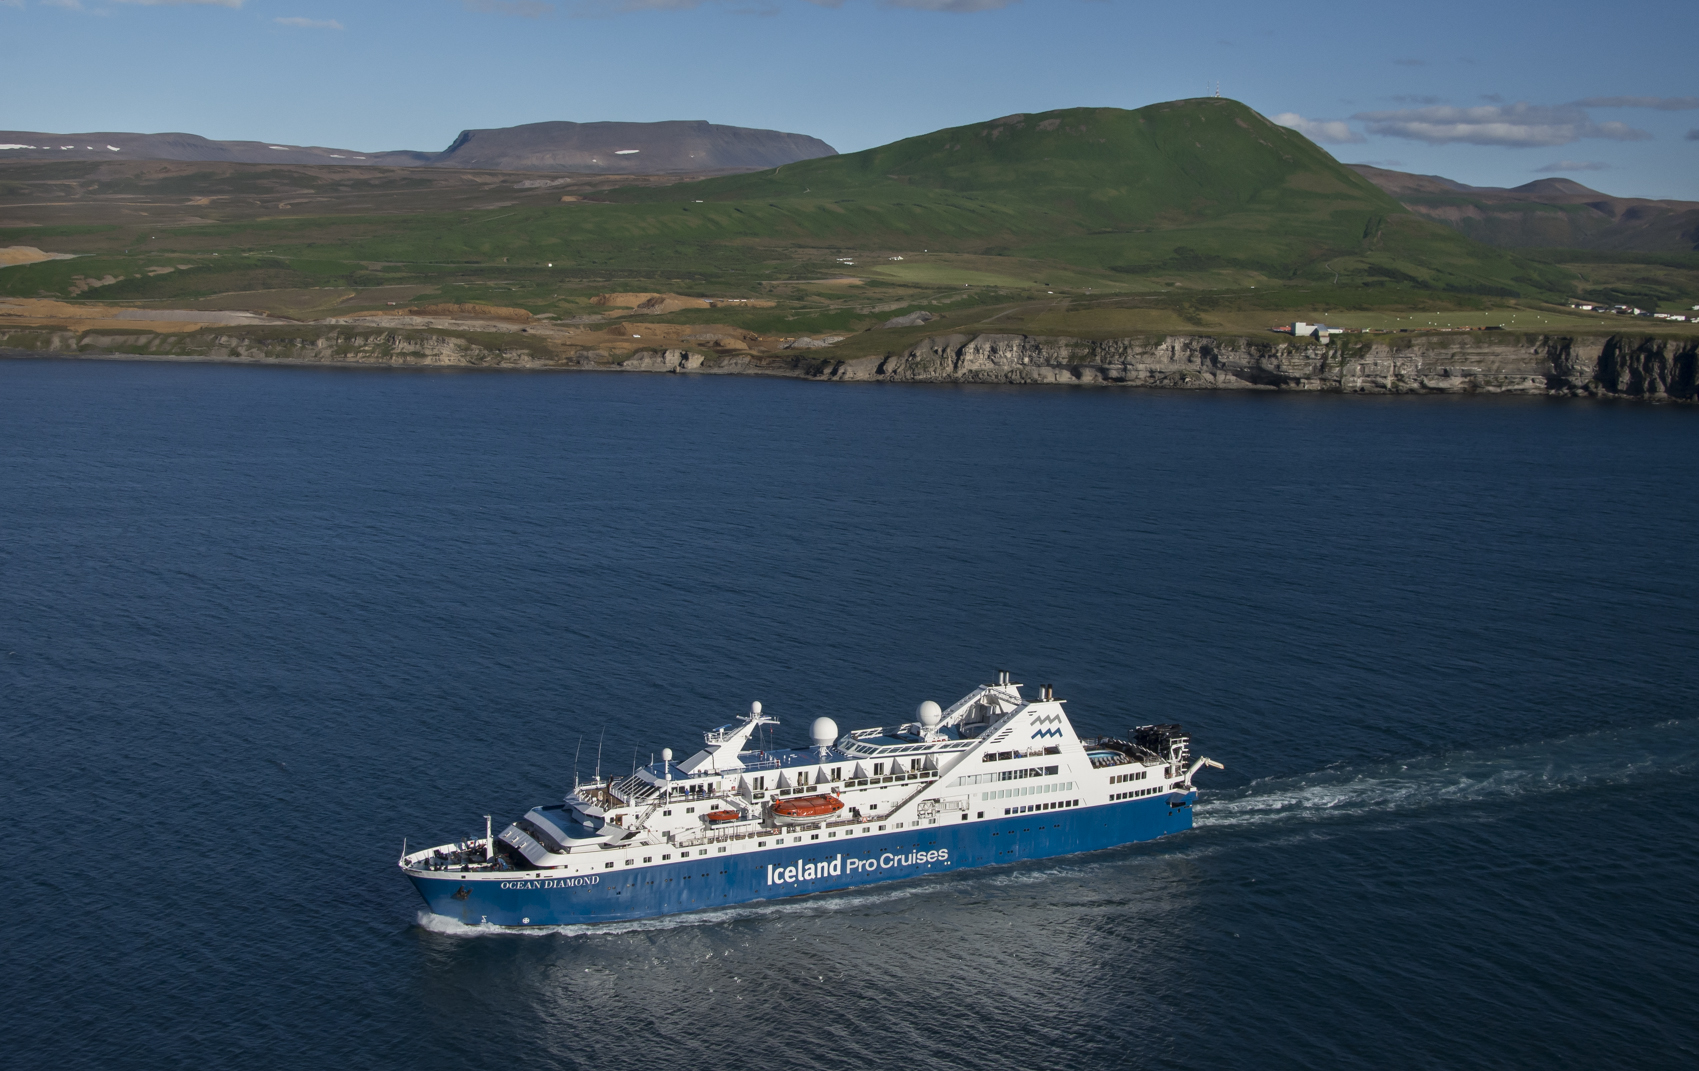 Der Island- und Grönlandspezialist Iceland ProCruises bietet im Sommerkatalog 2020 erstmals eine rein deutschsprachige Kreuzfahrt mit Cruise Leader Peter von Sassen an.